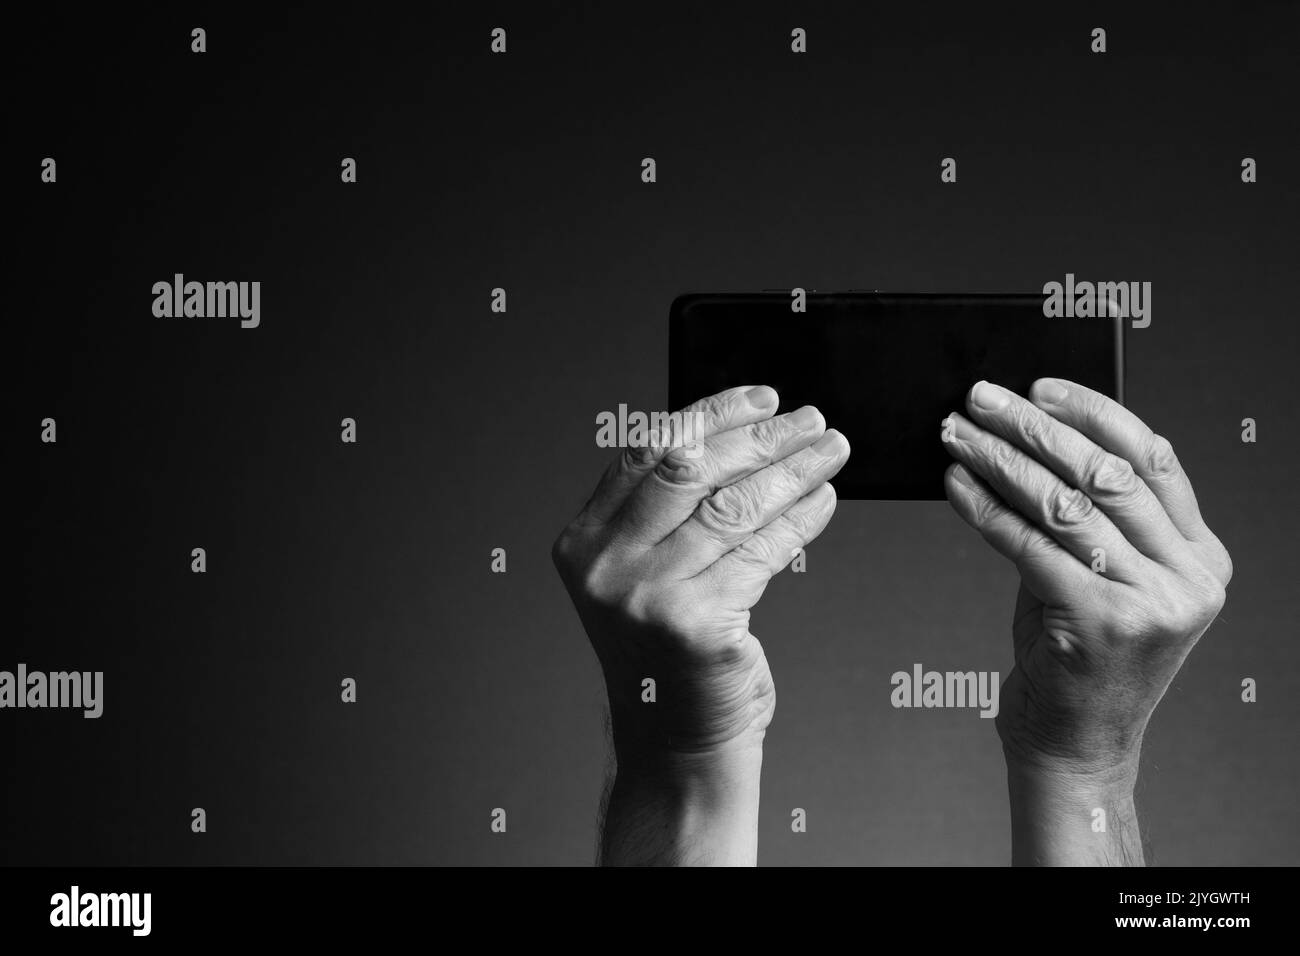 Imagen en blanco y negro, vista posterior de las manos del hombre sosteniendo el teléfono inteligente horizontalmente y los mensajes de texto o juegos aislados sobre un fondo oscuro con espacio de copia Foto de stock